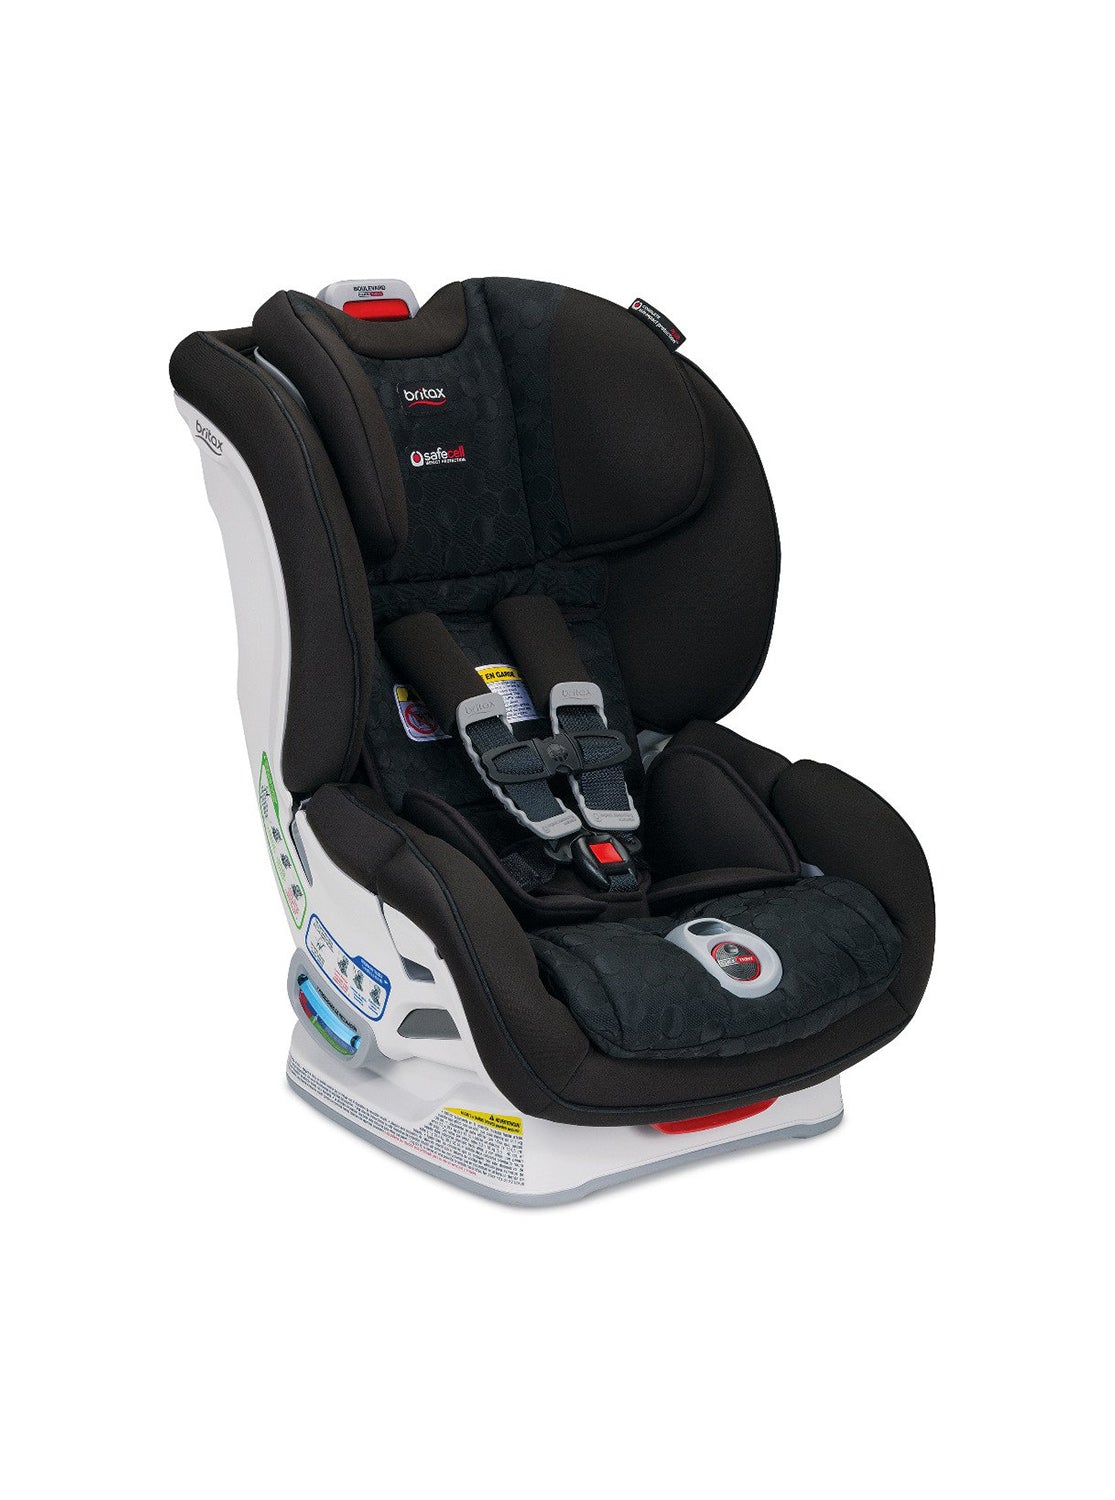 Britax Boulevard ClickTight Convertible Car Seat Cover Set, Circa - ANB Baby -$75 - $100